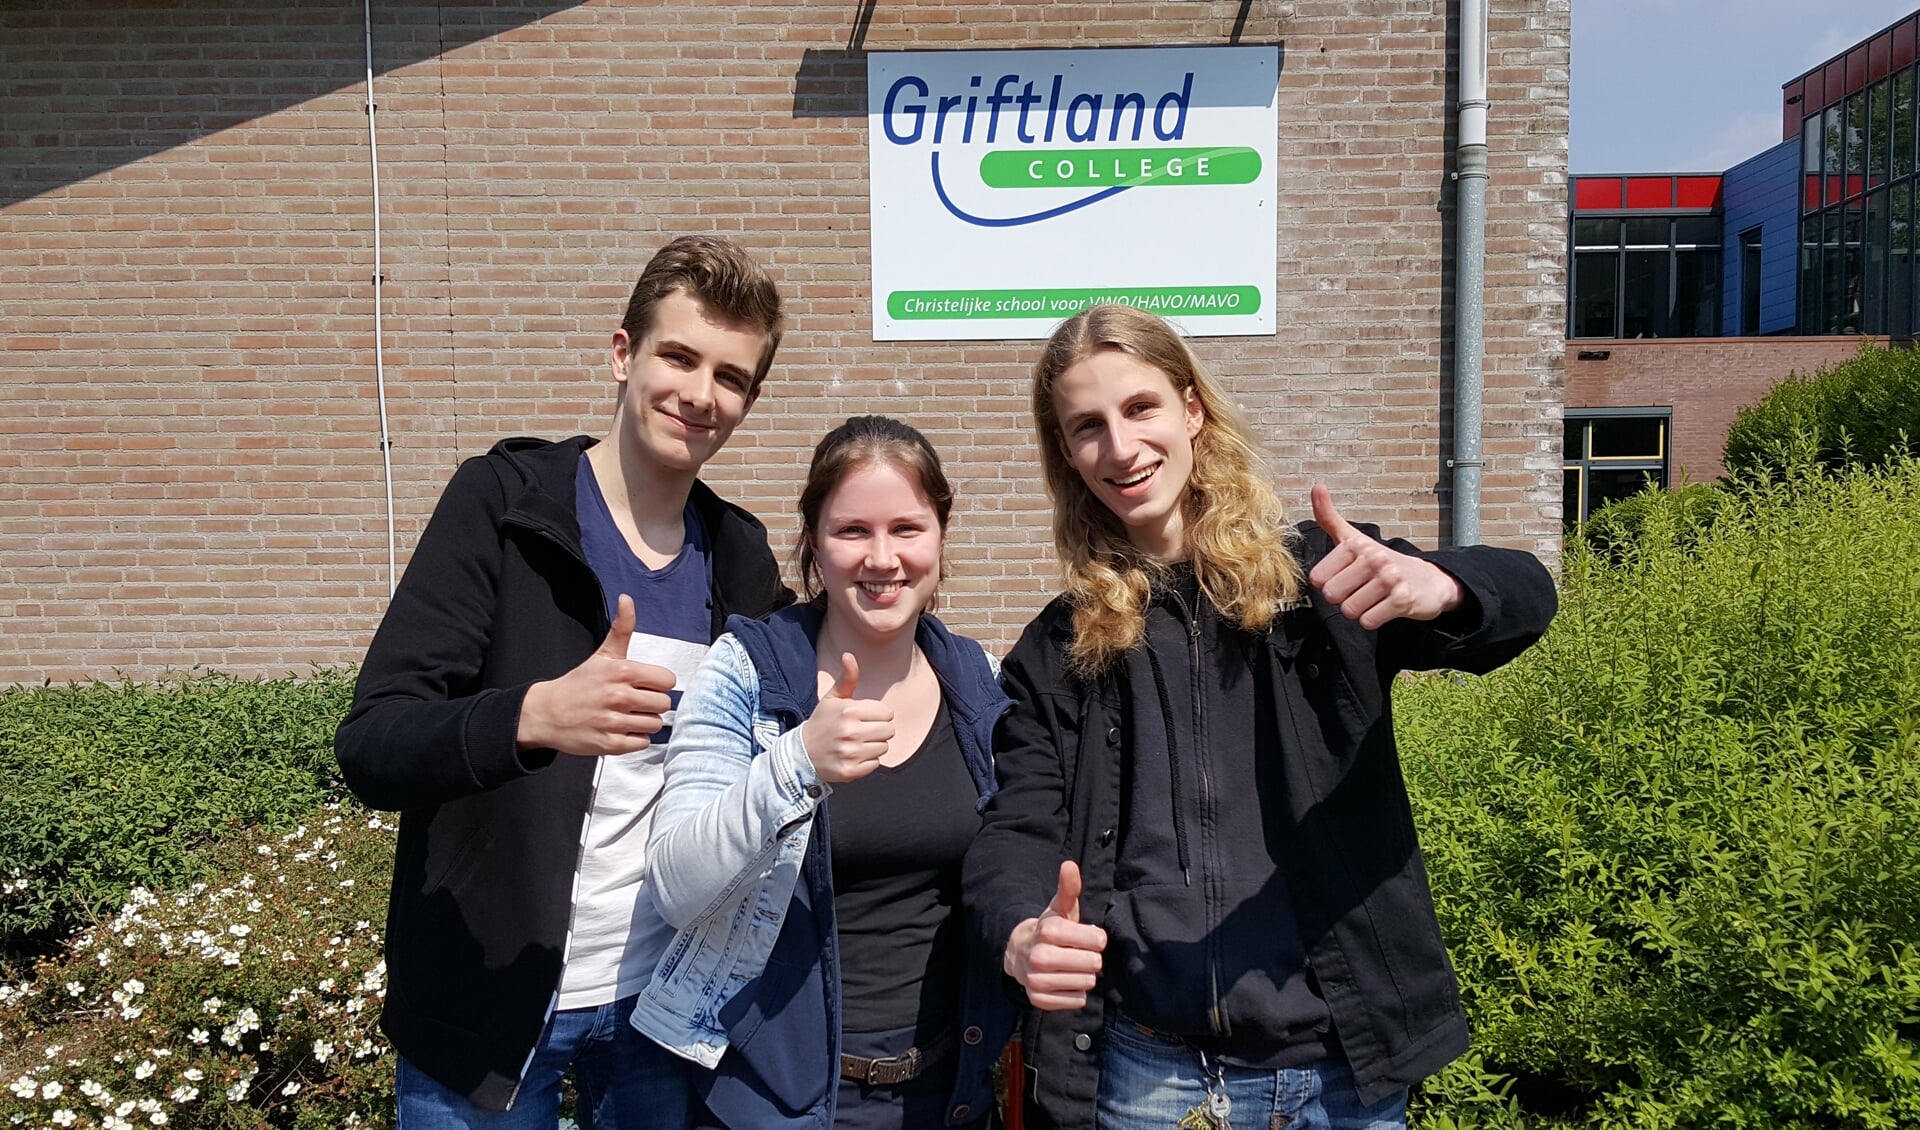 Het zit er op! Rein Bosgra (links), Liselotte Boonman en Wout van Schalkwijk moeten tot 12 juni de wachtkamer in en verder vooral ontspannen en leuke dingen gaan doen.